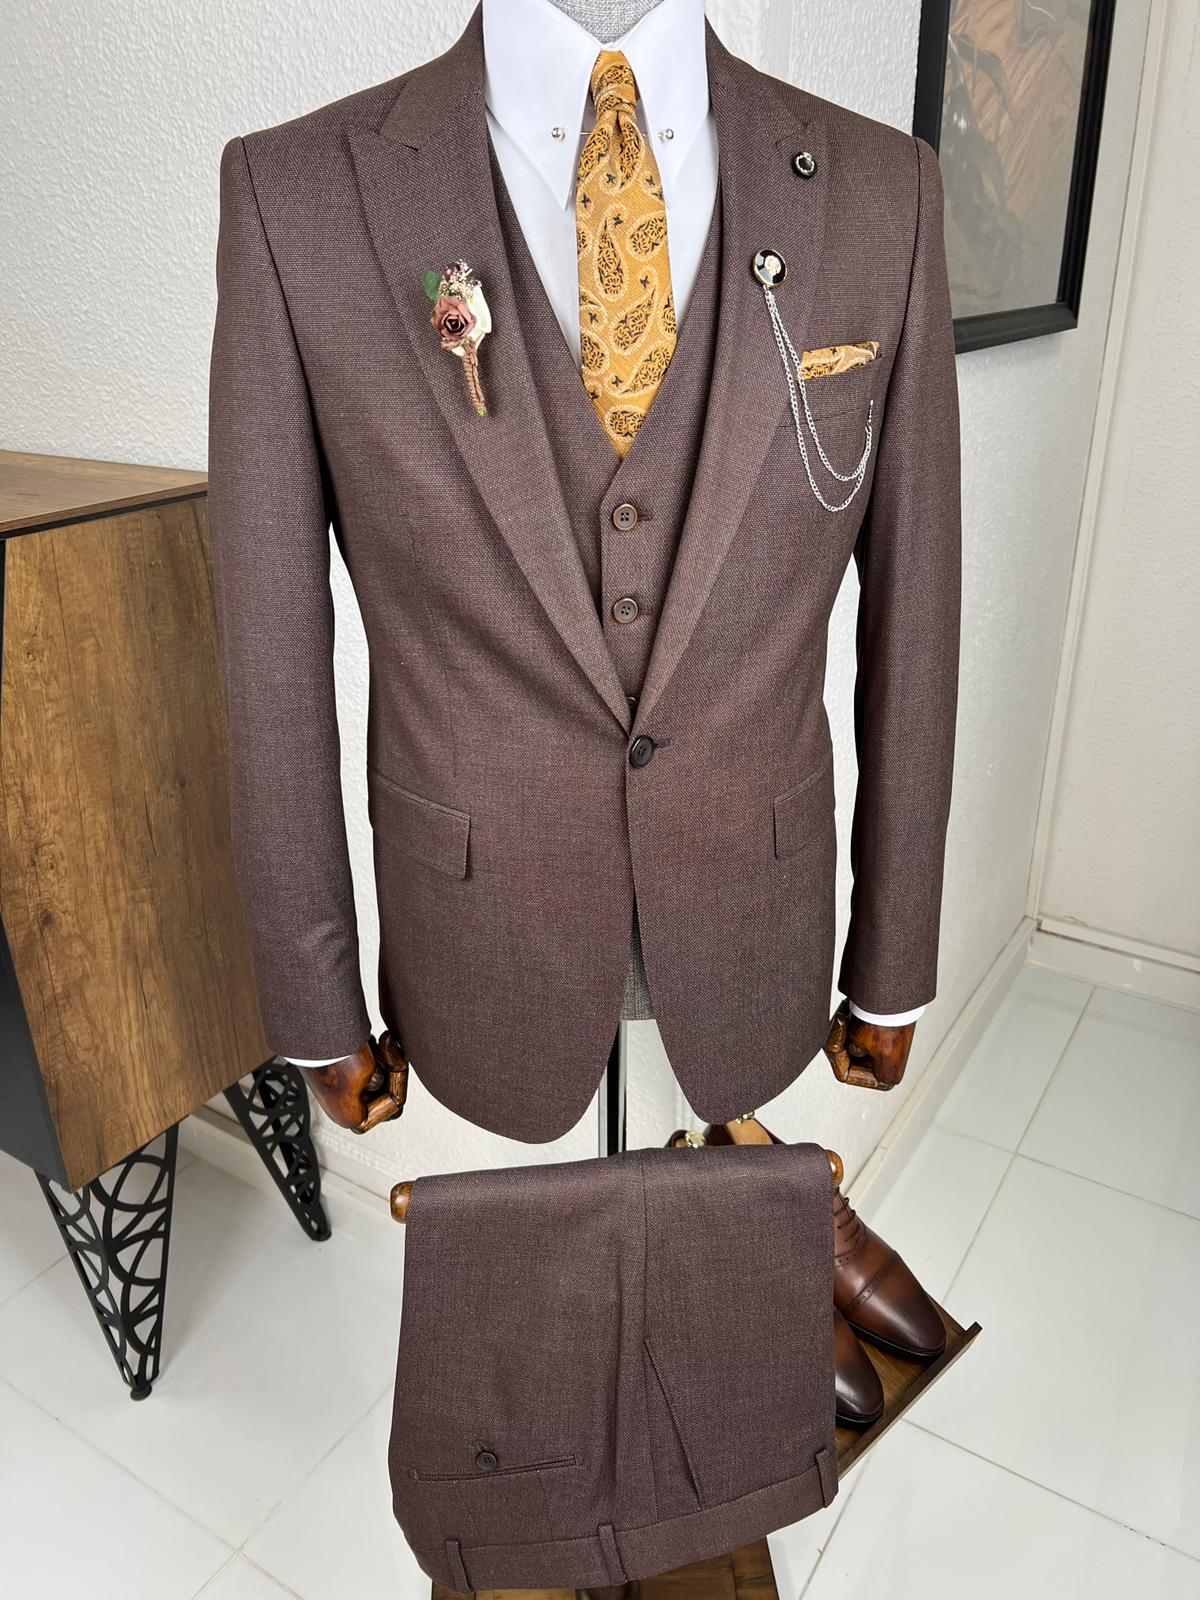 Veneta Slim Fit High Quality Brown Woolen Suit